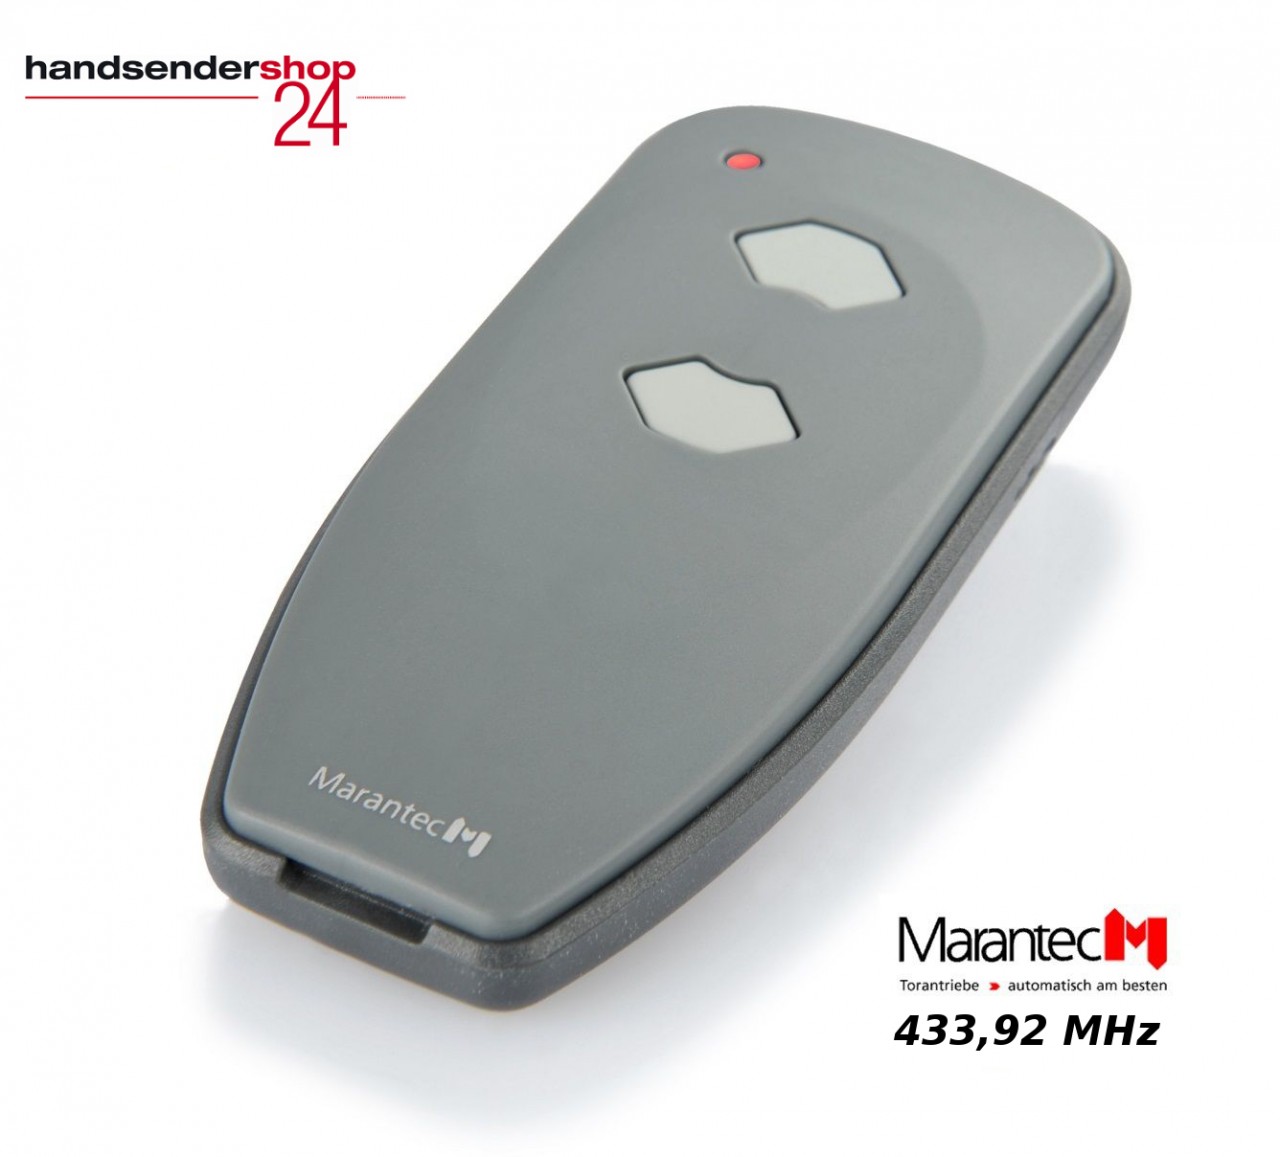 2 Stück Marantec Digital 382 Handsender 2-Kanal 433,92 MHz